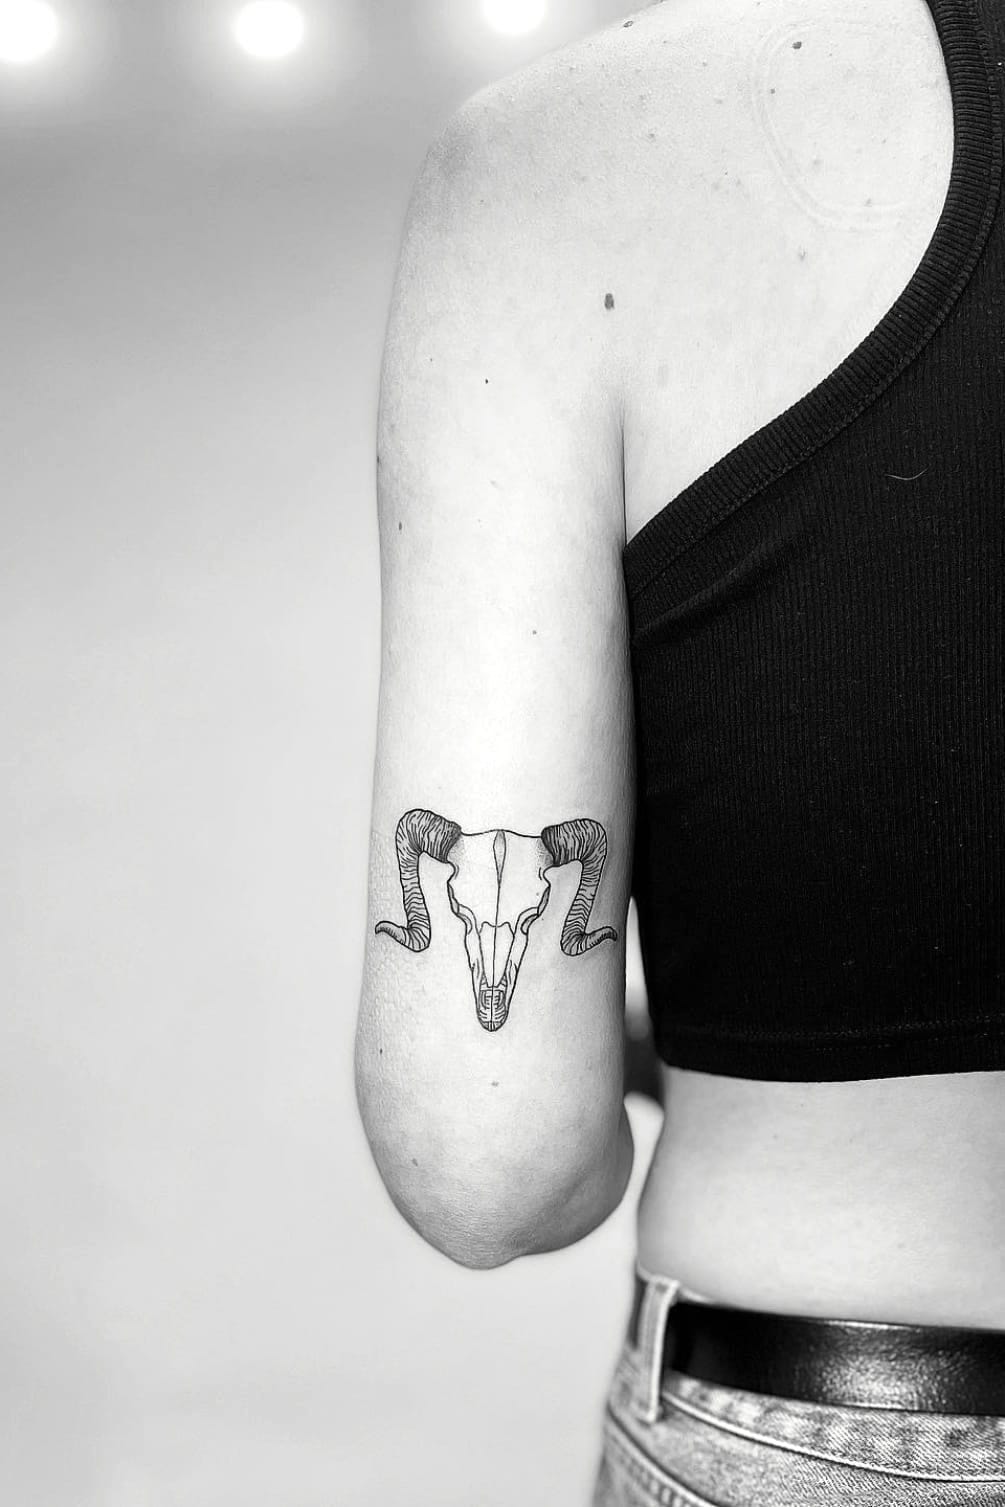 Aries Tattoo on Upper Arm